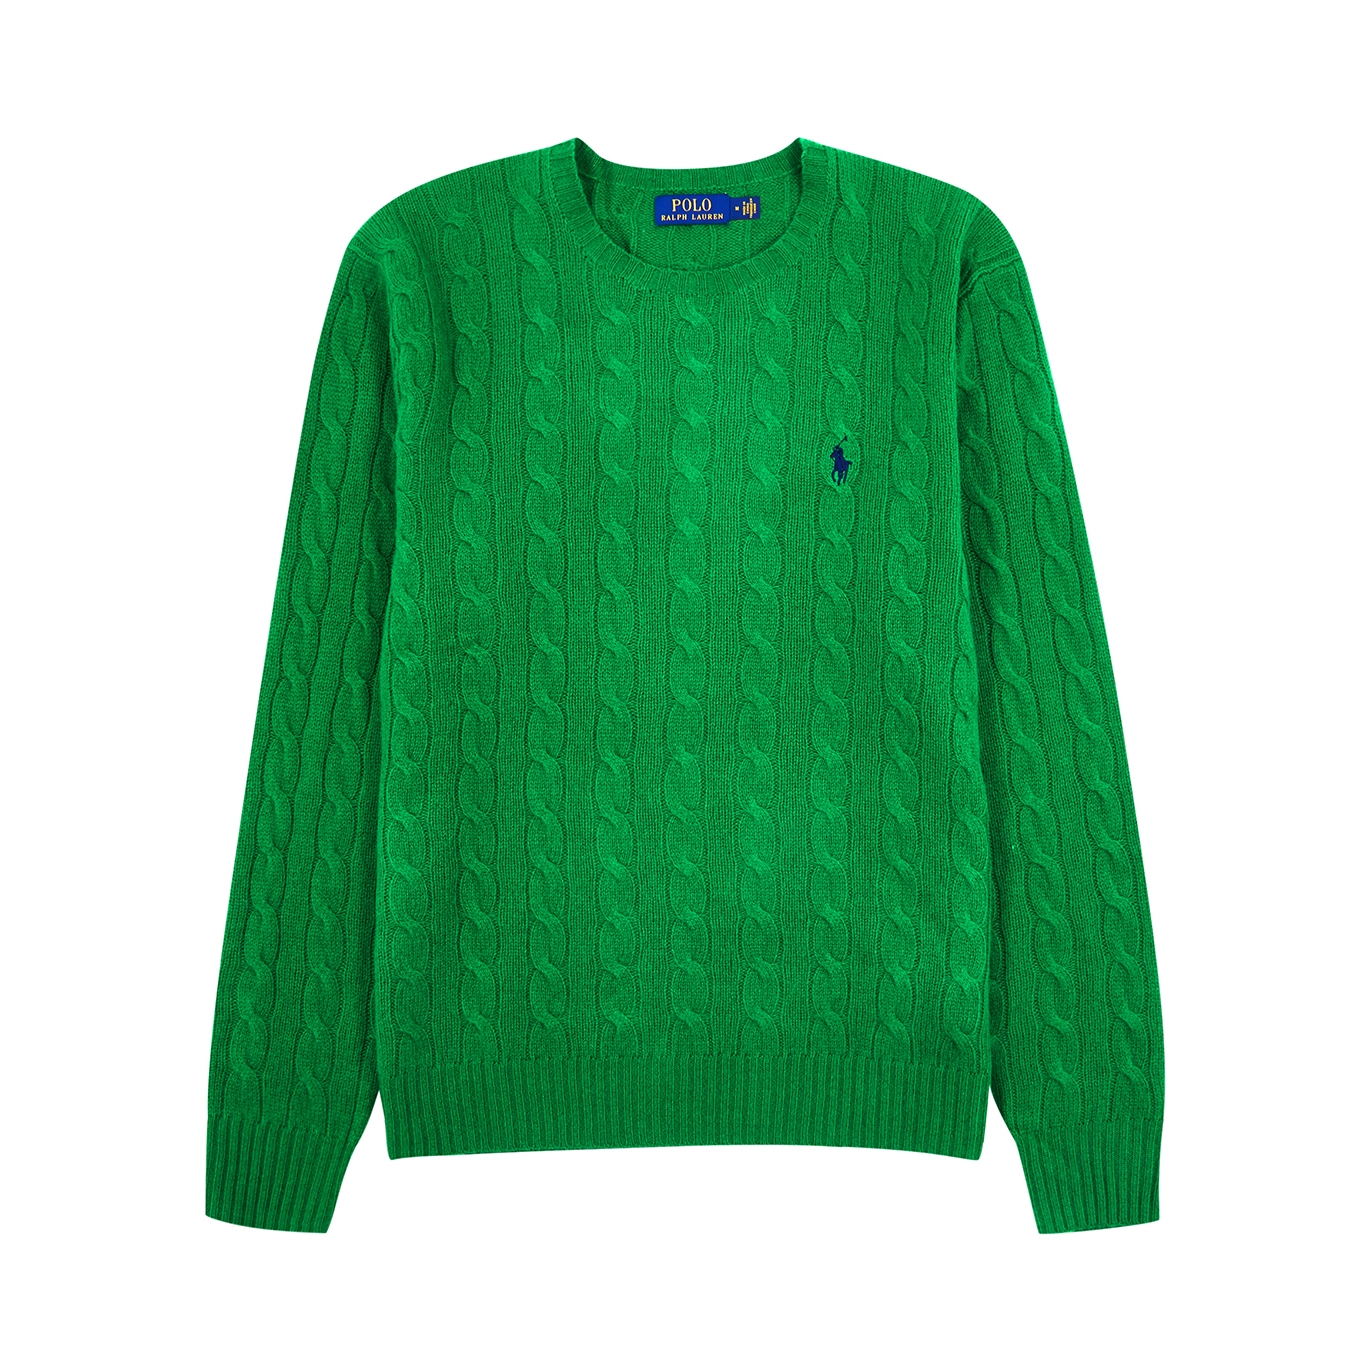 Polo Ralph Lauren Cable-knit Wool-blend Jumper - Green - M